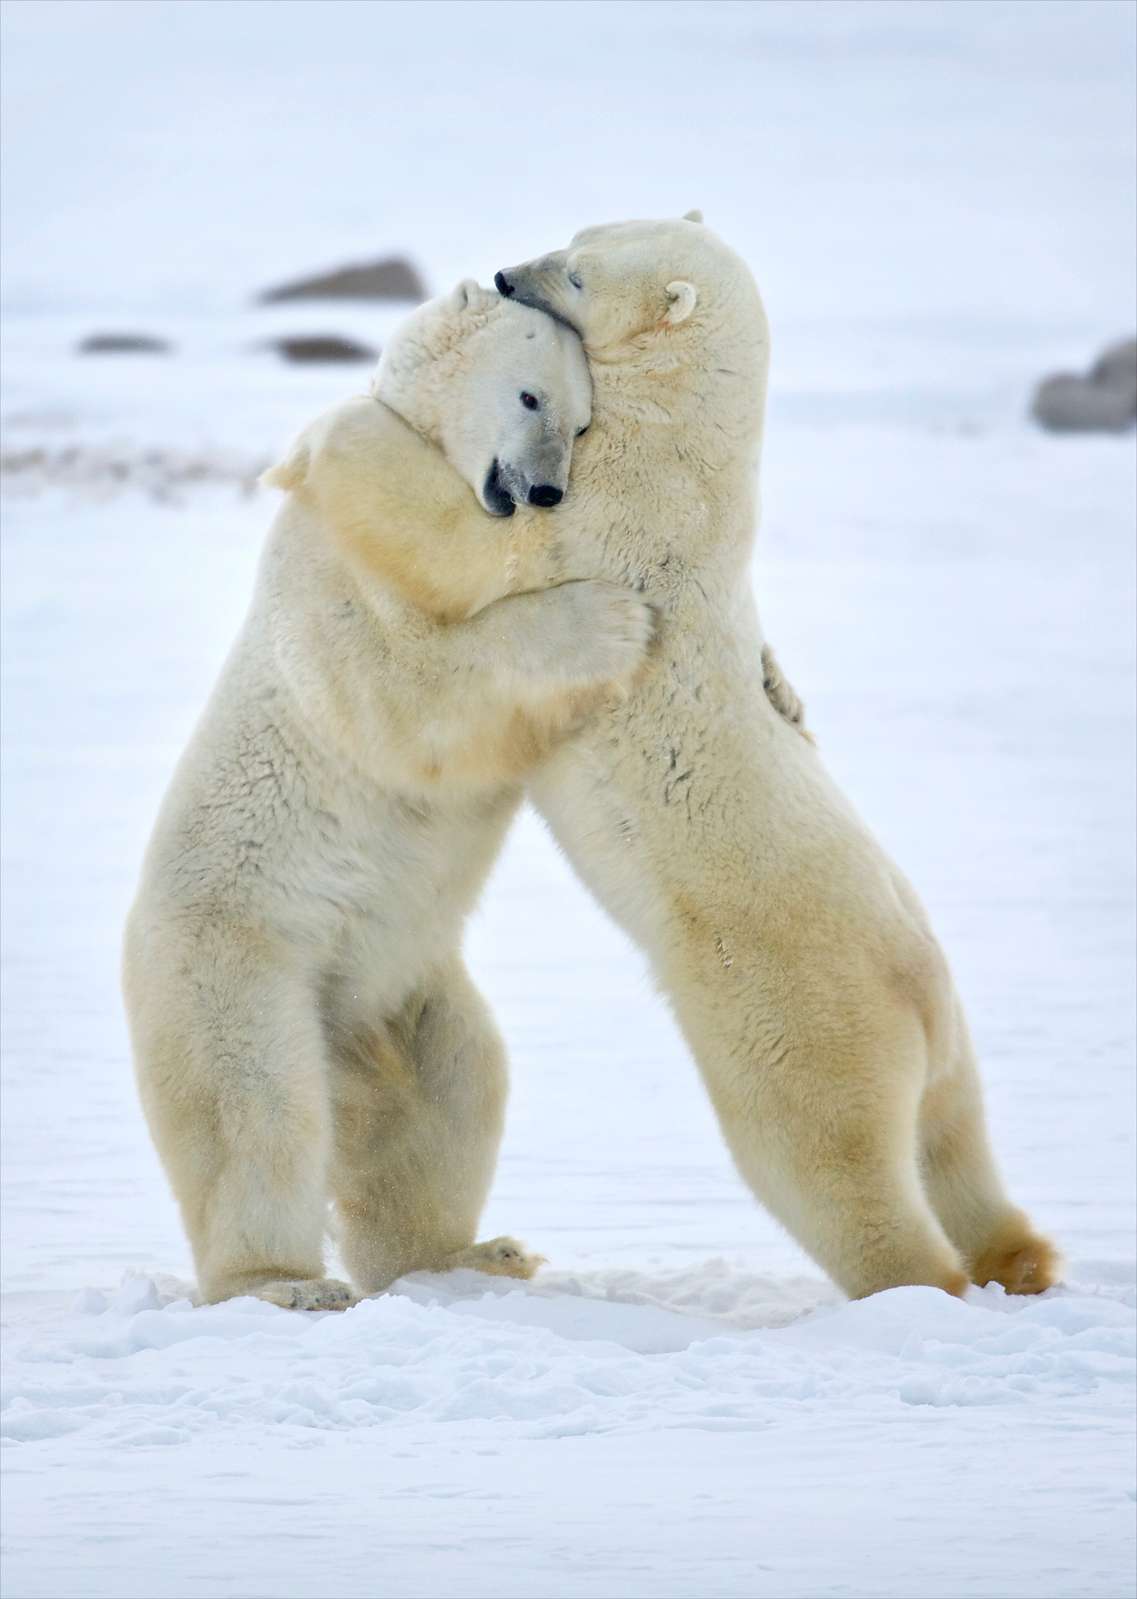 polar bears sparring